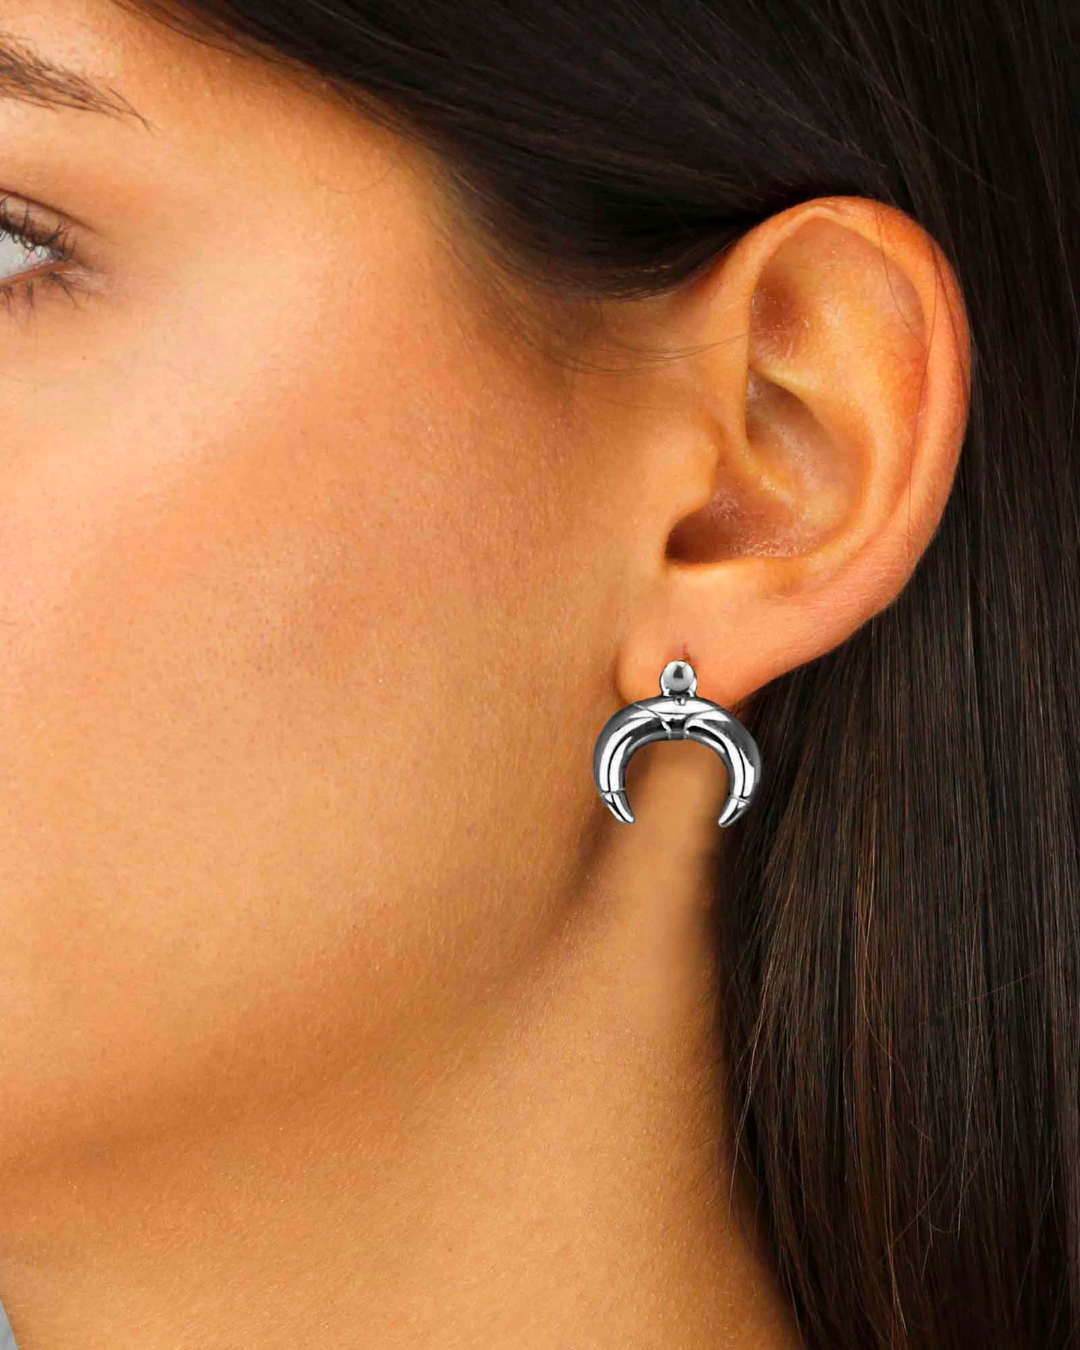 Pin Earrings, Silver